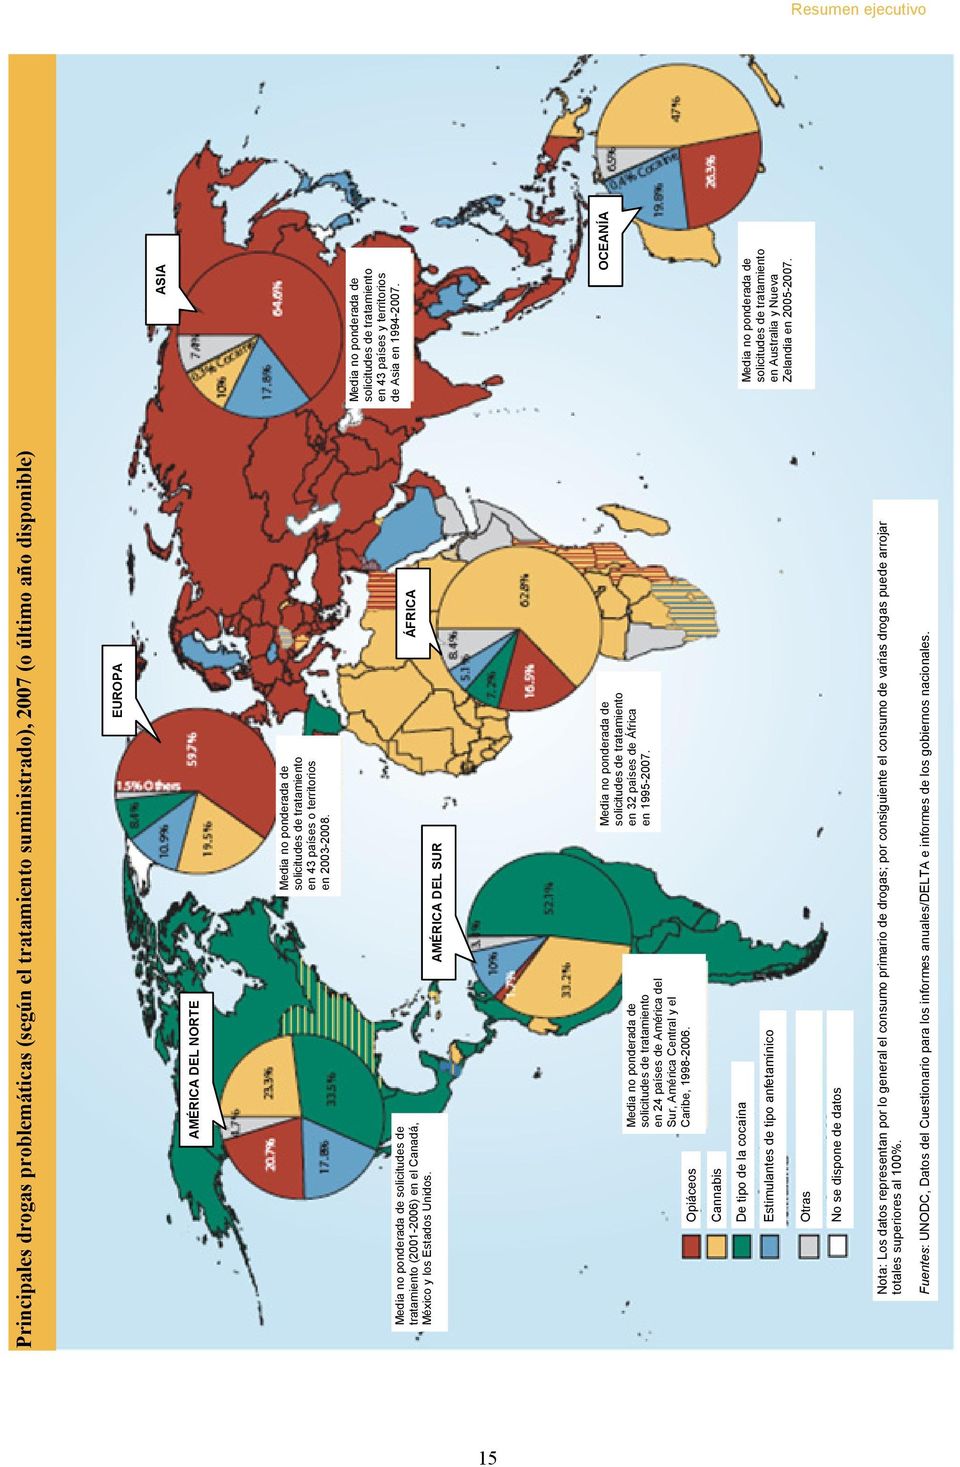 AMÉRICA DEL SUR ÁFRICA Opiáceos Media no ponderada de solicitudes de tratamiento en 24 países de América del Sur, América Central y el Caribe, 1998-2006.